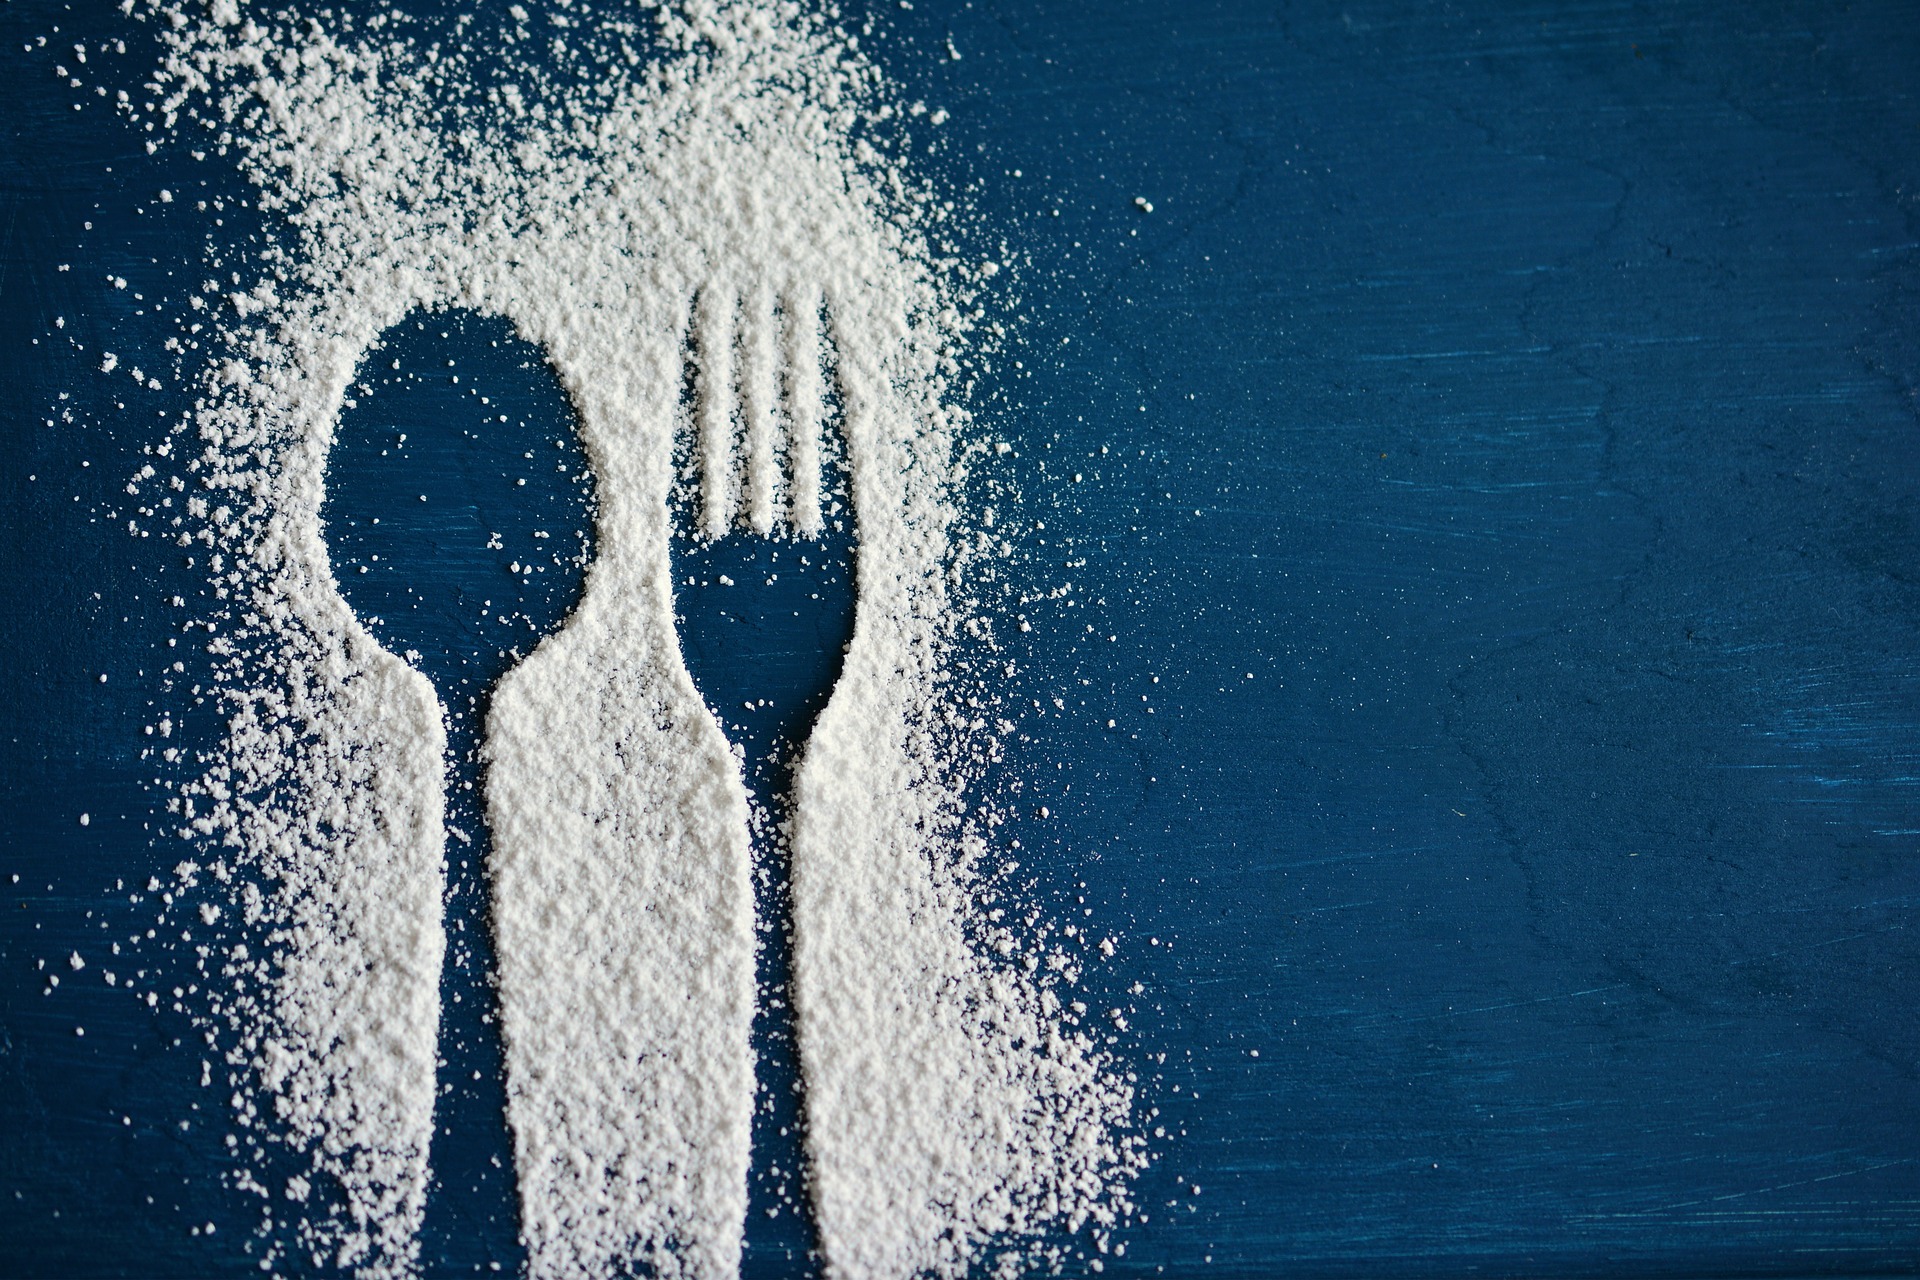 Senza zucchero in 4 settimane, cosa succede al corpo?